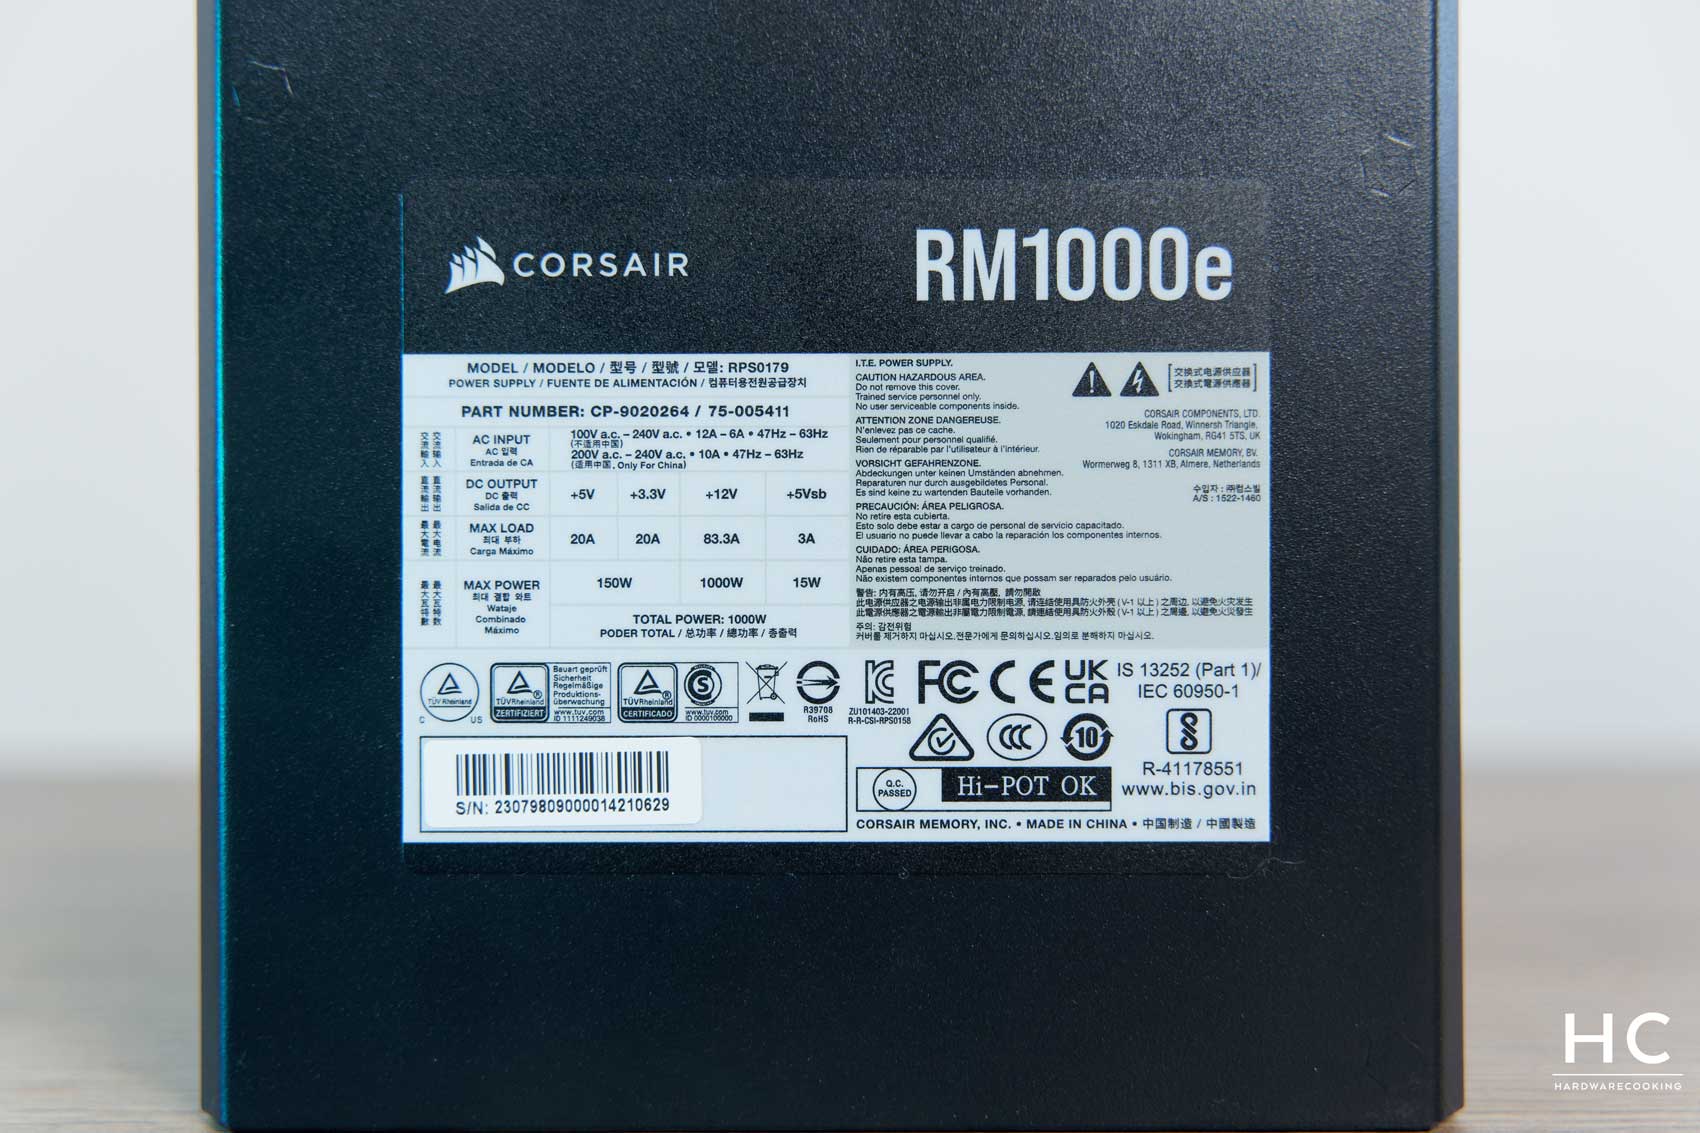 CORSAIR lance les nouveaux blocs d'alimentation RMx SHIFT ATX 3.0, qui  rendent le montage de votre PC plus facile que jamais